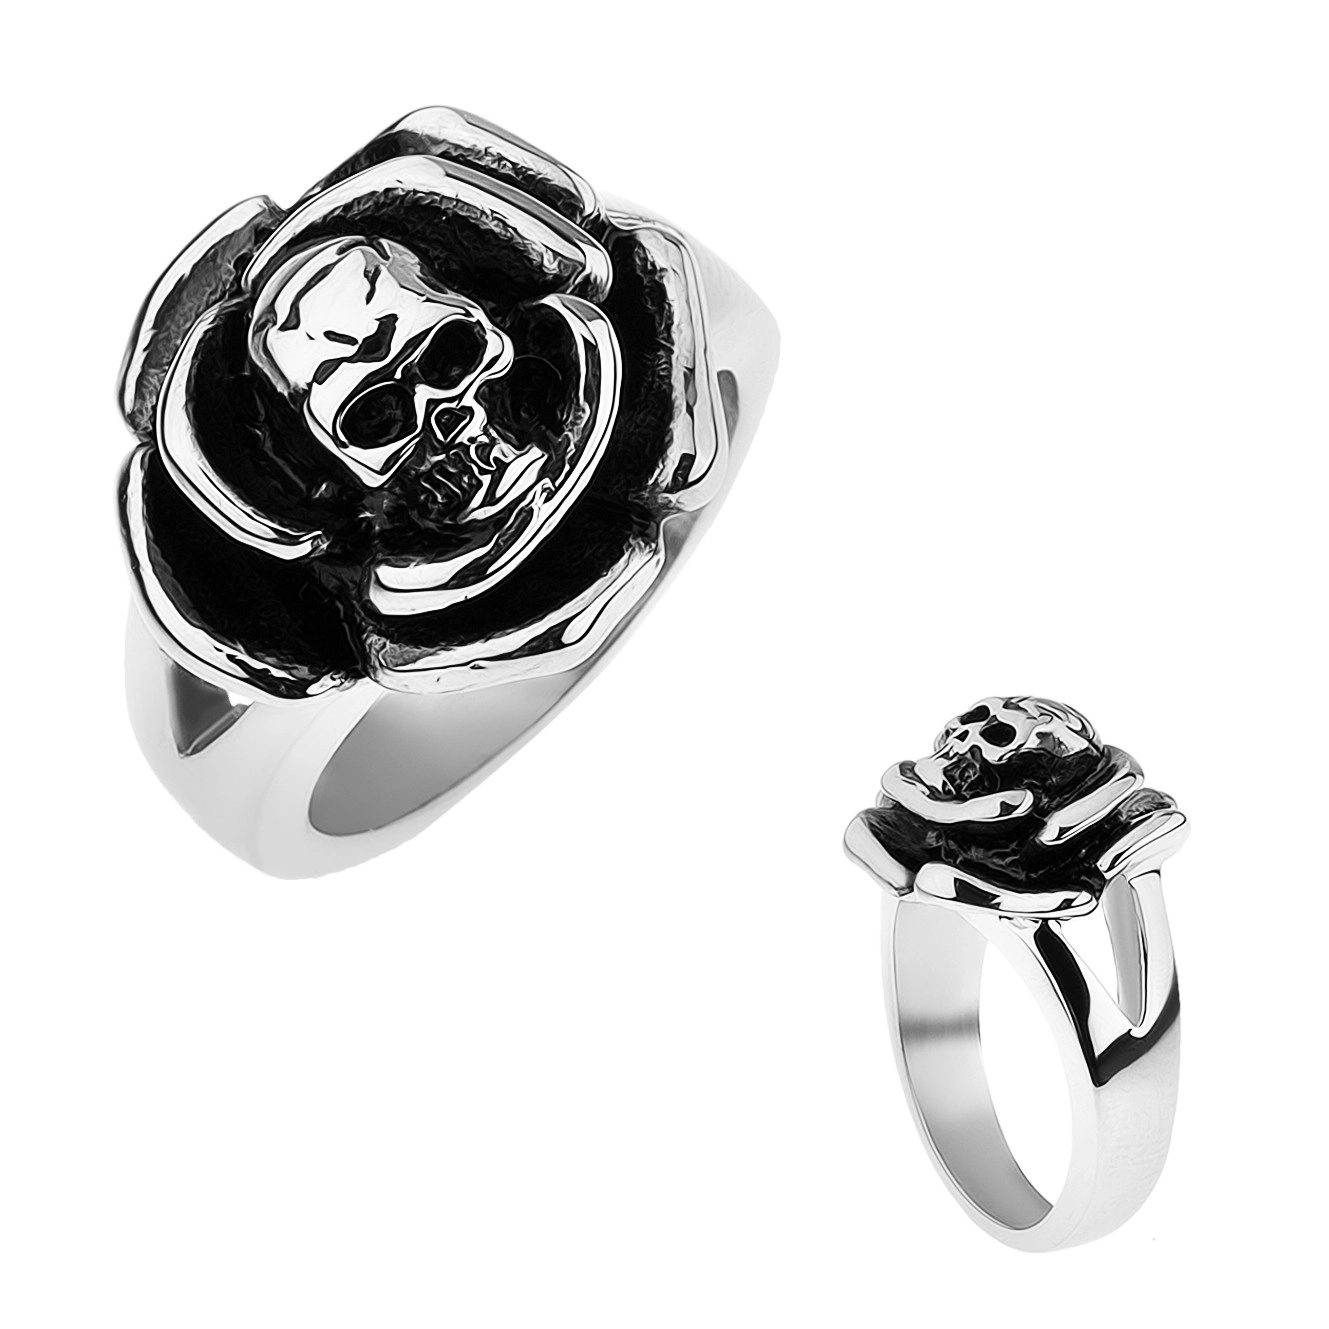 Patinovaný ocelový prsten, růže s lebkou uprostřed, rozdvojená ramena - Velikost: 59